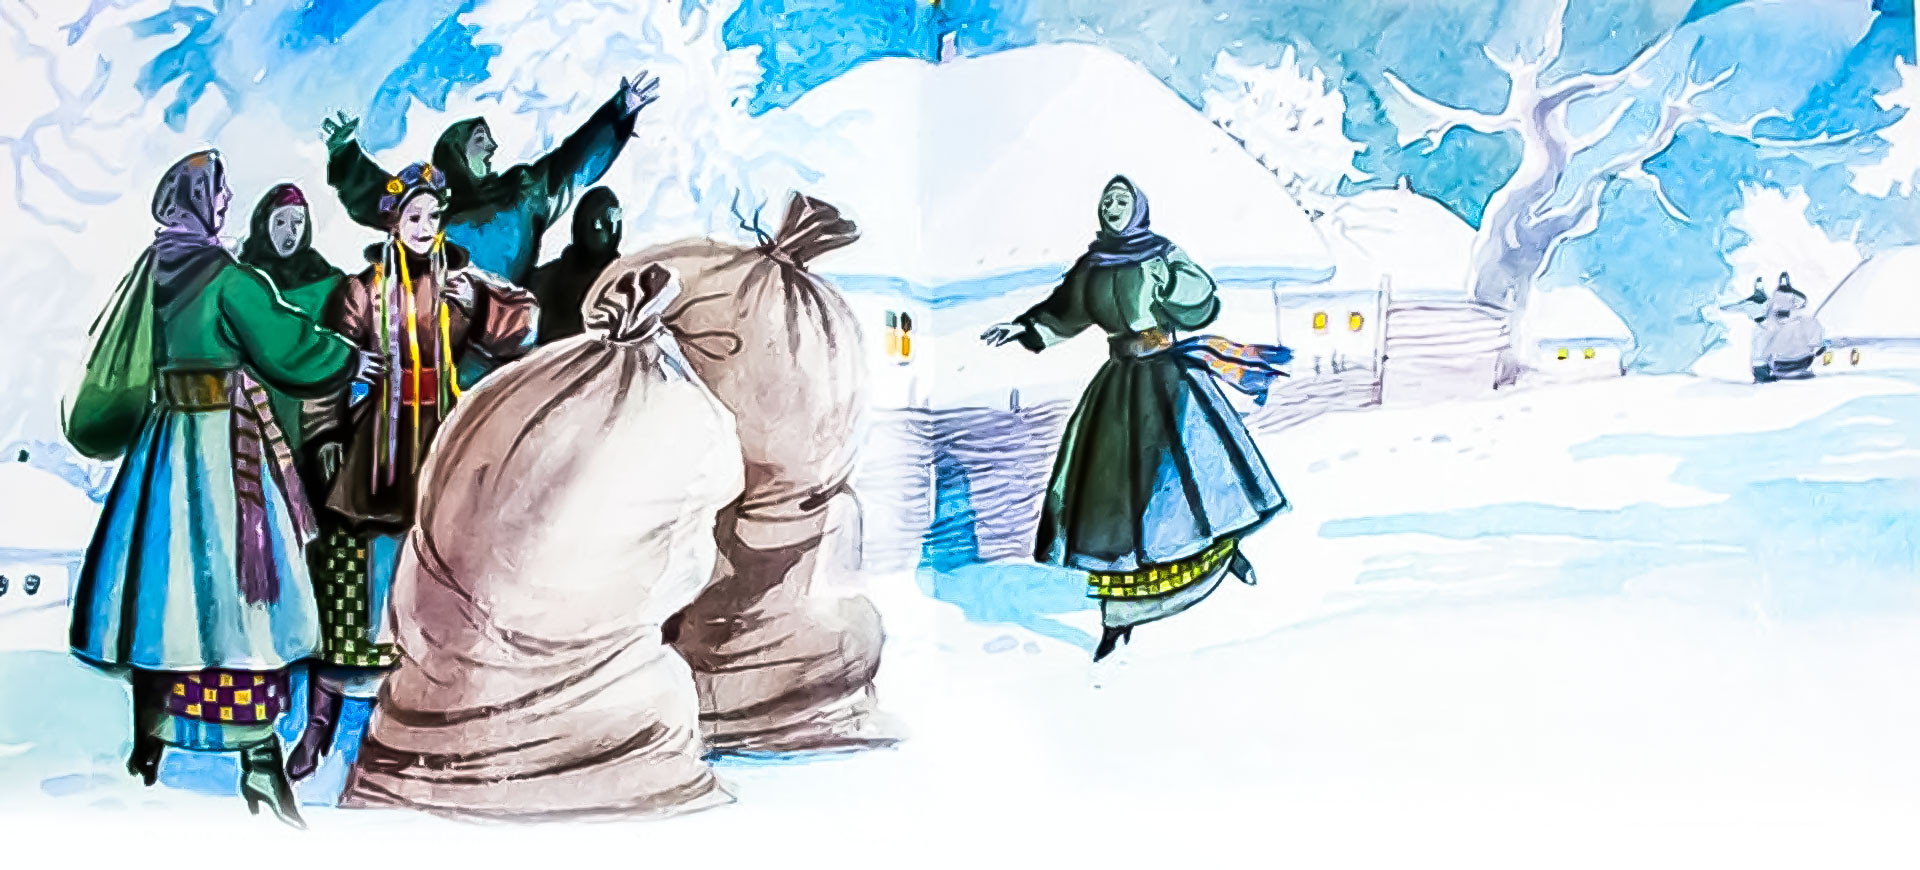 Ночь перед рождеством где. Иллюстрация к повести Гоголя ночь перед Рождеством. Ночь перед Рождеством Гоголь. Иллюстрации к ночь перед Рождеством Гоголя 5 класс. Гоголь ночь перед Рождеством иллюстрации с черевичками.